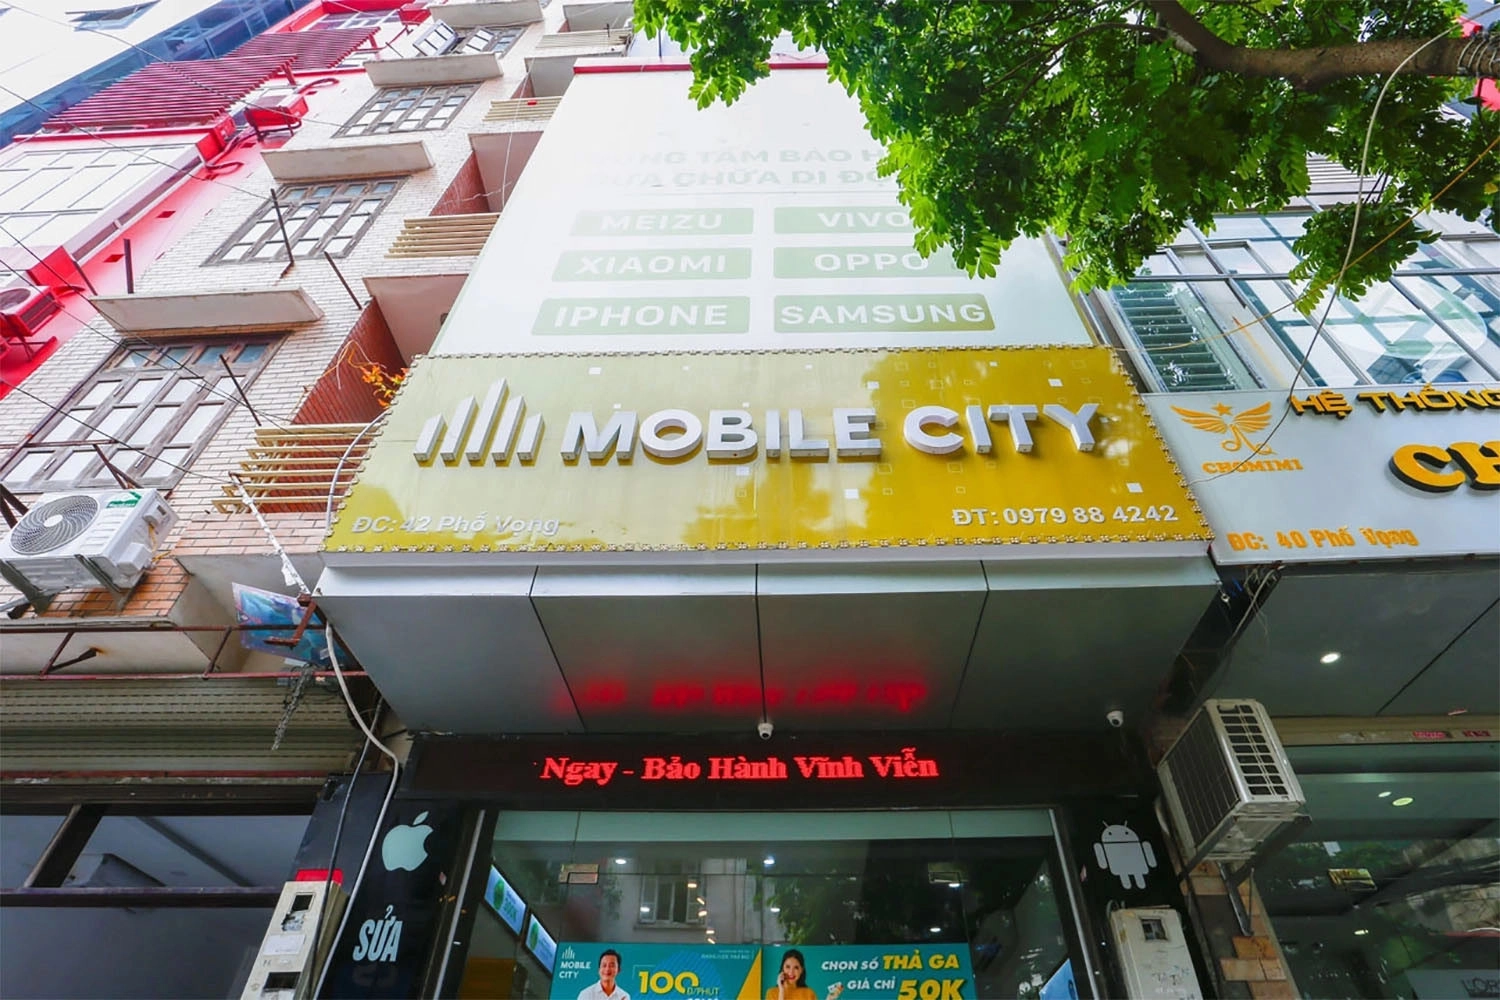 thay Pin  iPhone XS Max, Địa chỉ thay Pin cho iPhone XS Max tại Hà Nội, Đà Nẵng, Tp.HCM